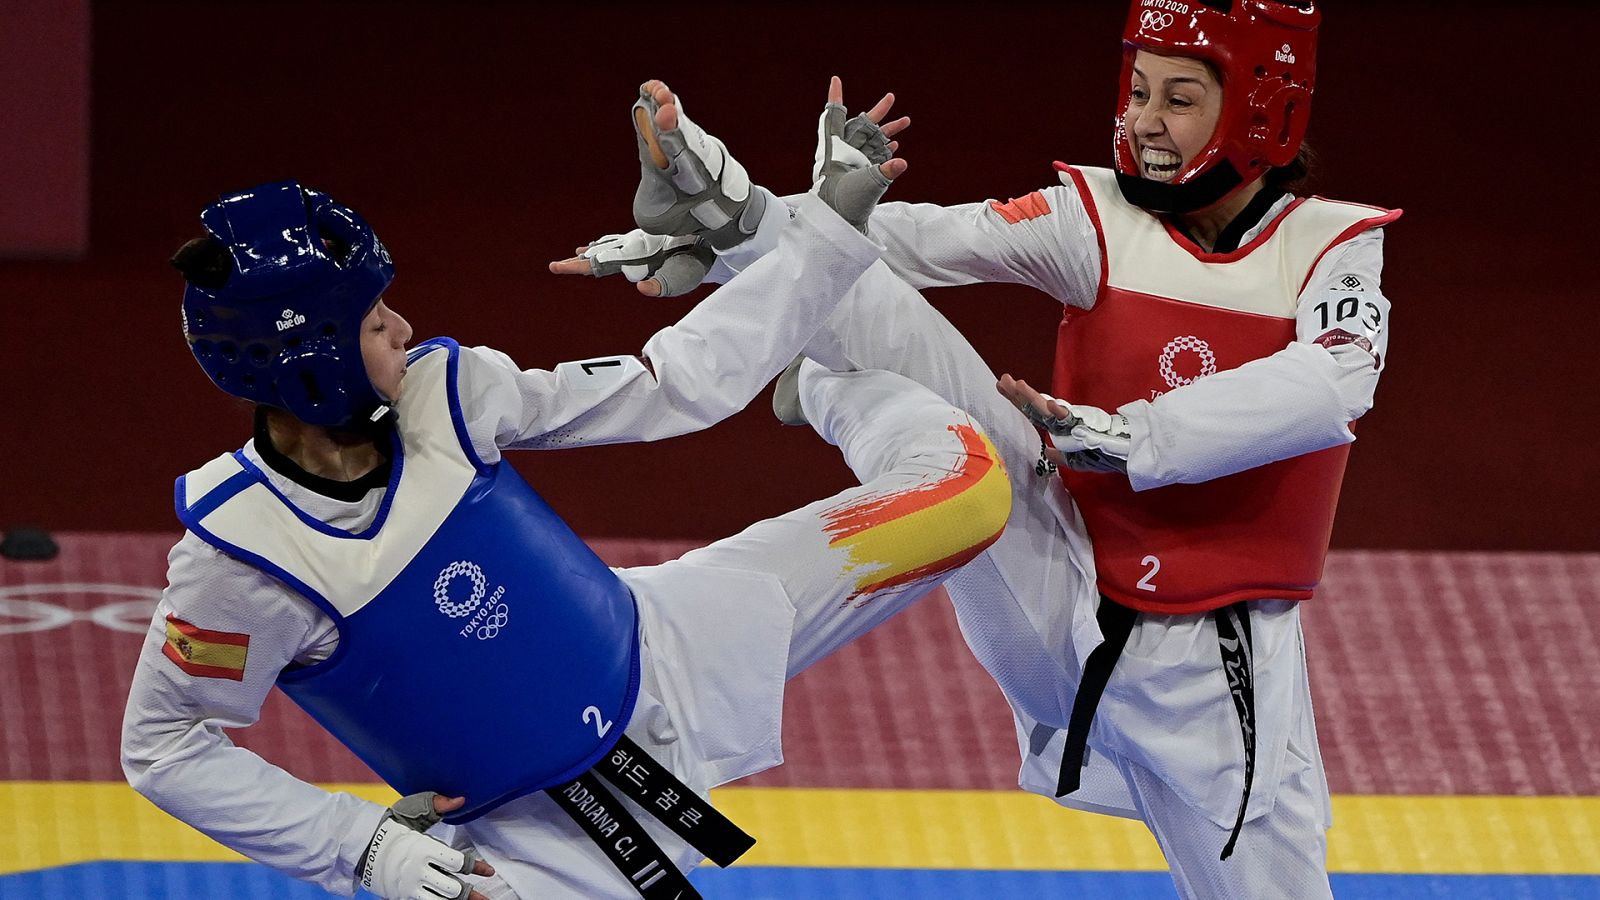 Taekwondo: Clasificación femenina semifinal. Juegos Olímpicos de Tokio 2020